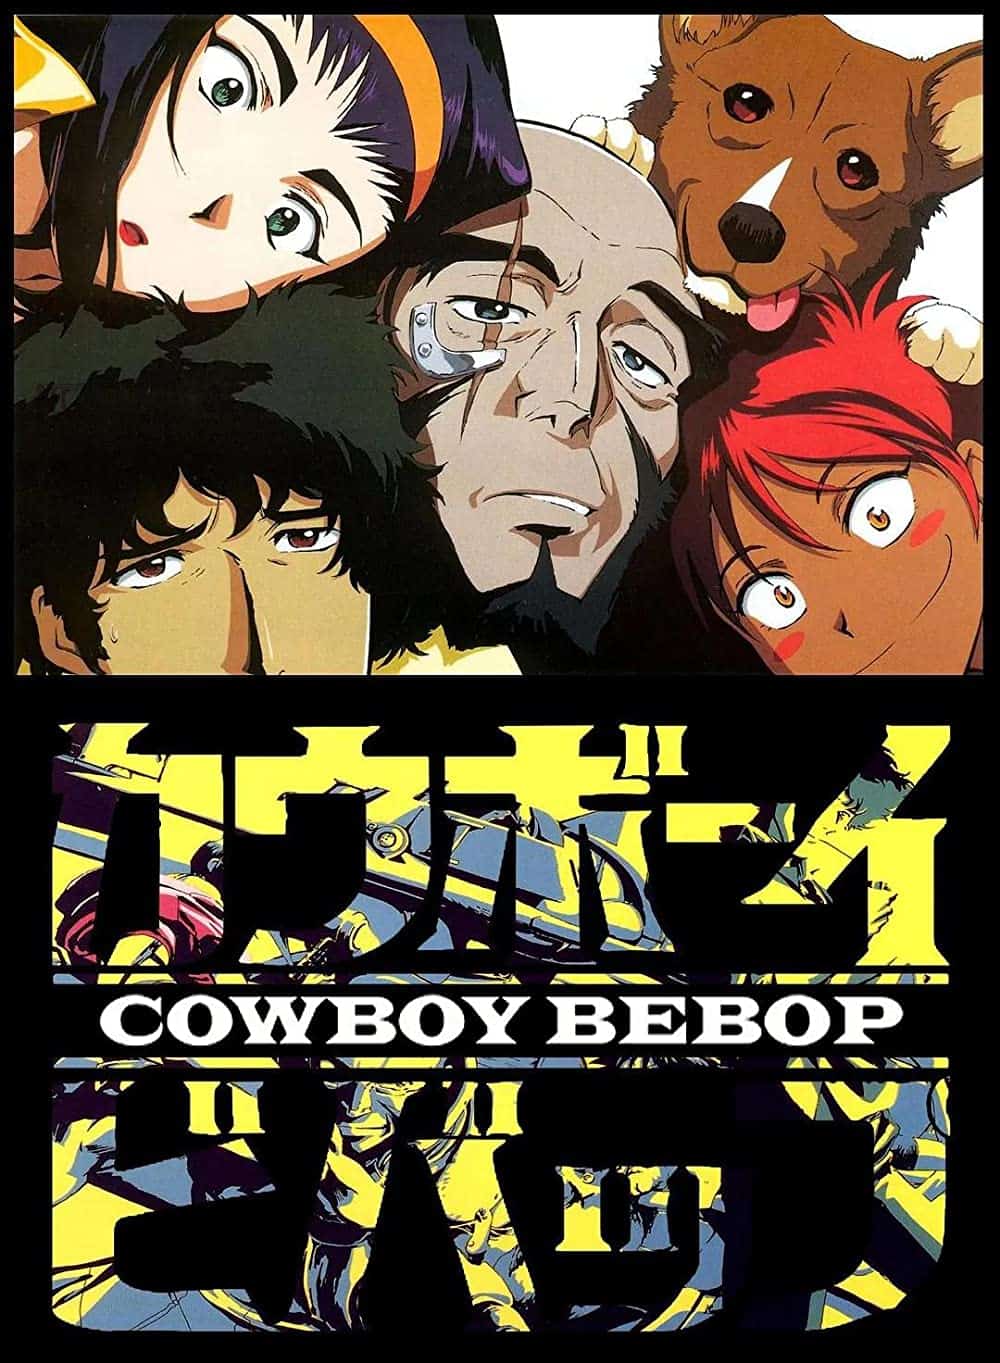 Cowboy Bebop hd poster